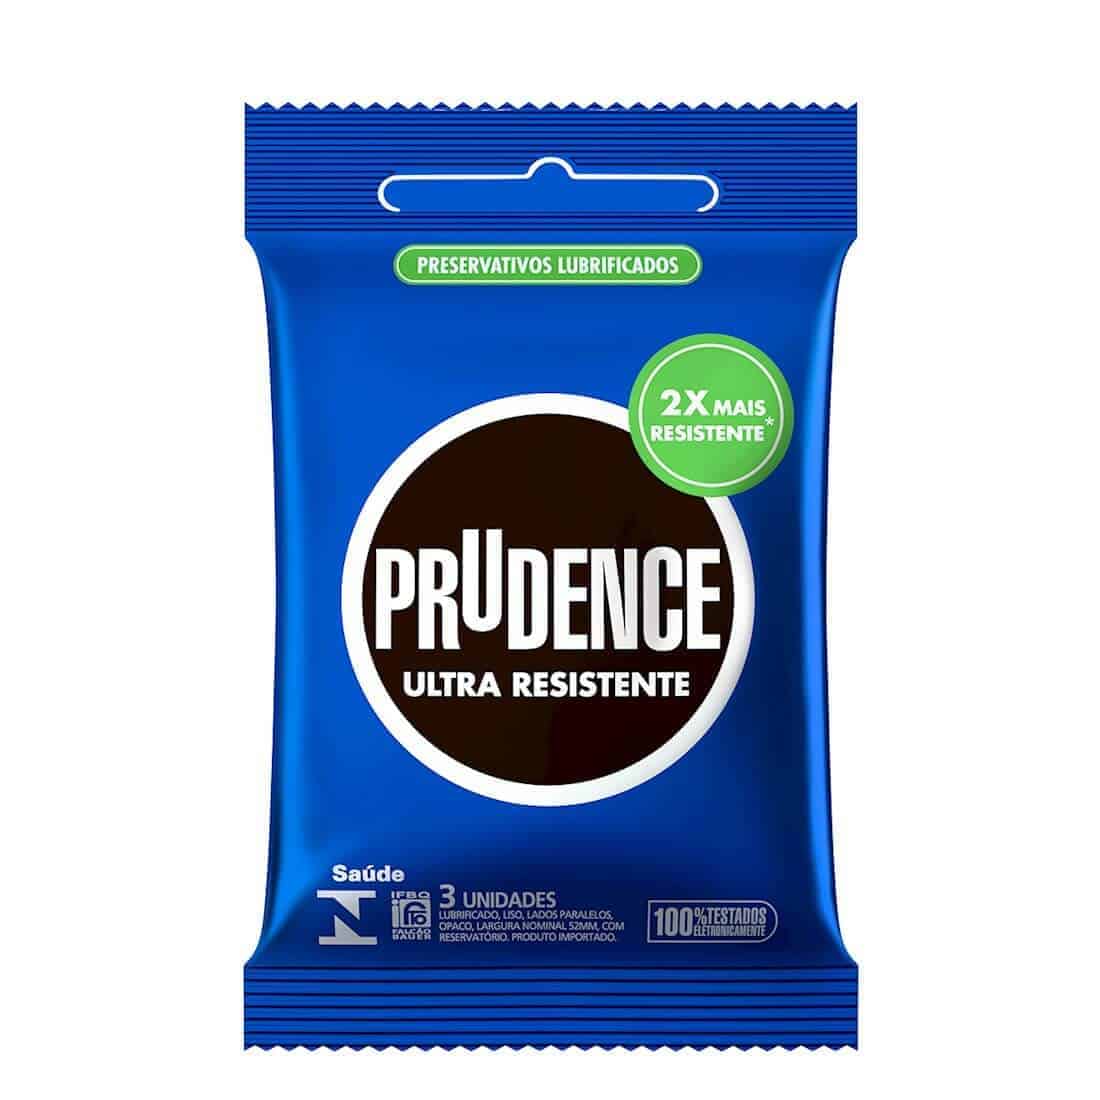 Preservativo Prudence Ultra Resistente a camisinha 2x mais resistente